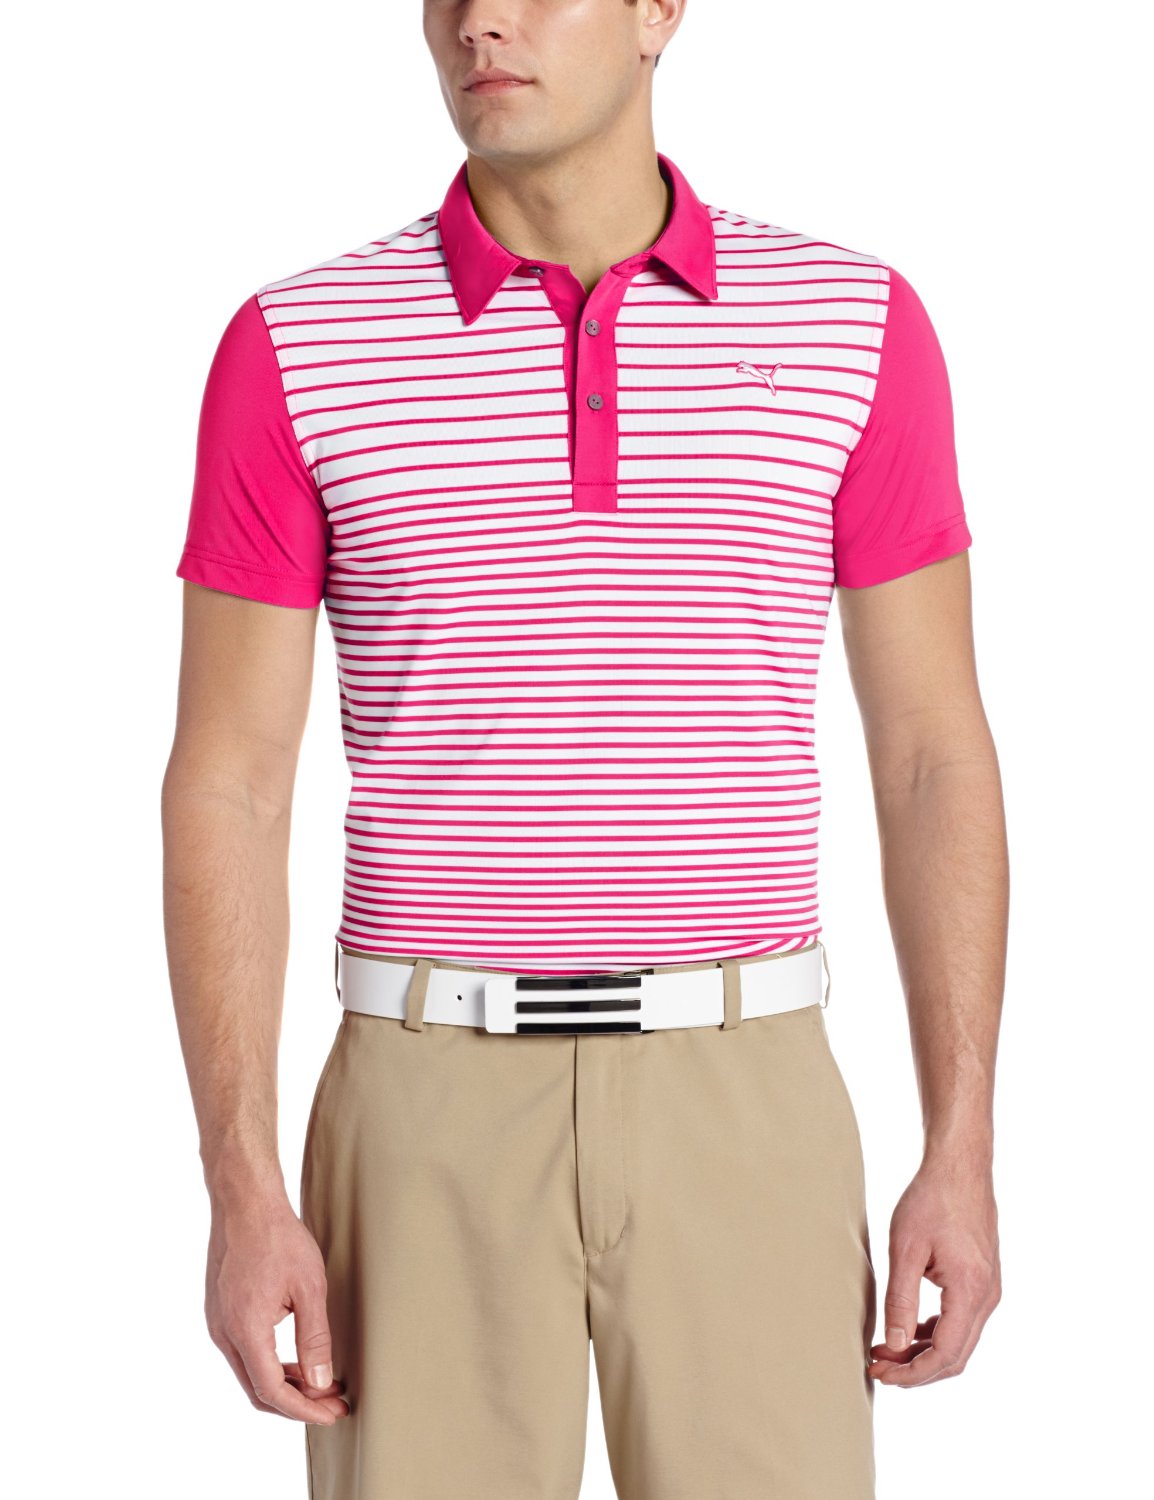 Puma Mens Yarn Dye Stripe Block Golf Shirts